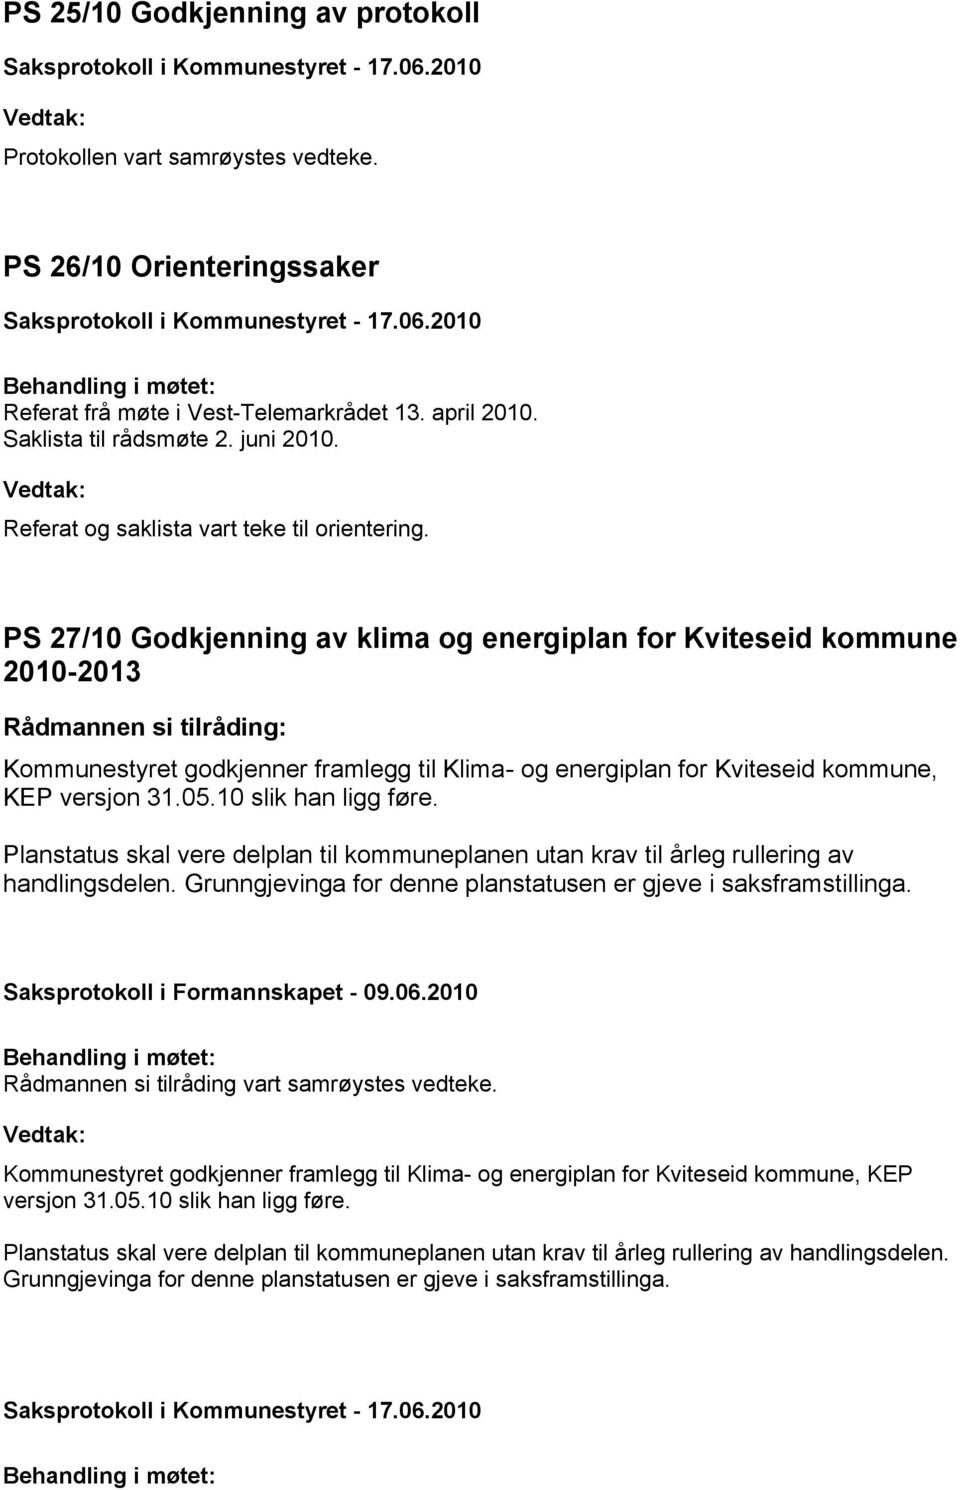 PS 27/10 Godkjenning av klima og energiplan for Kviteseid kommune 2010-2013 Kommunestyret godkjenner framlegg til Klima- og energiplan for Kviteseid kommune, KEP versjon 31.05.10 slik han ligg føre.